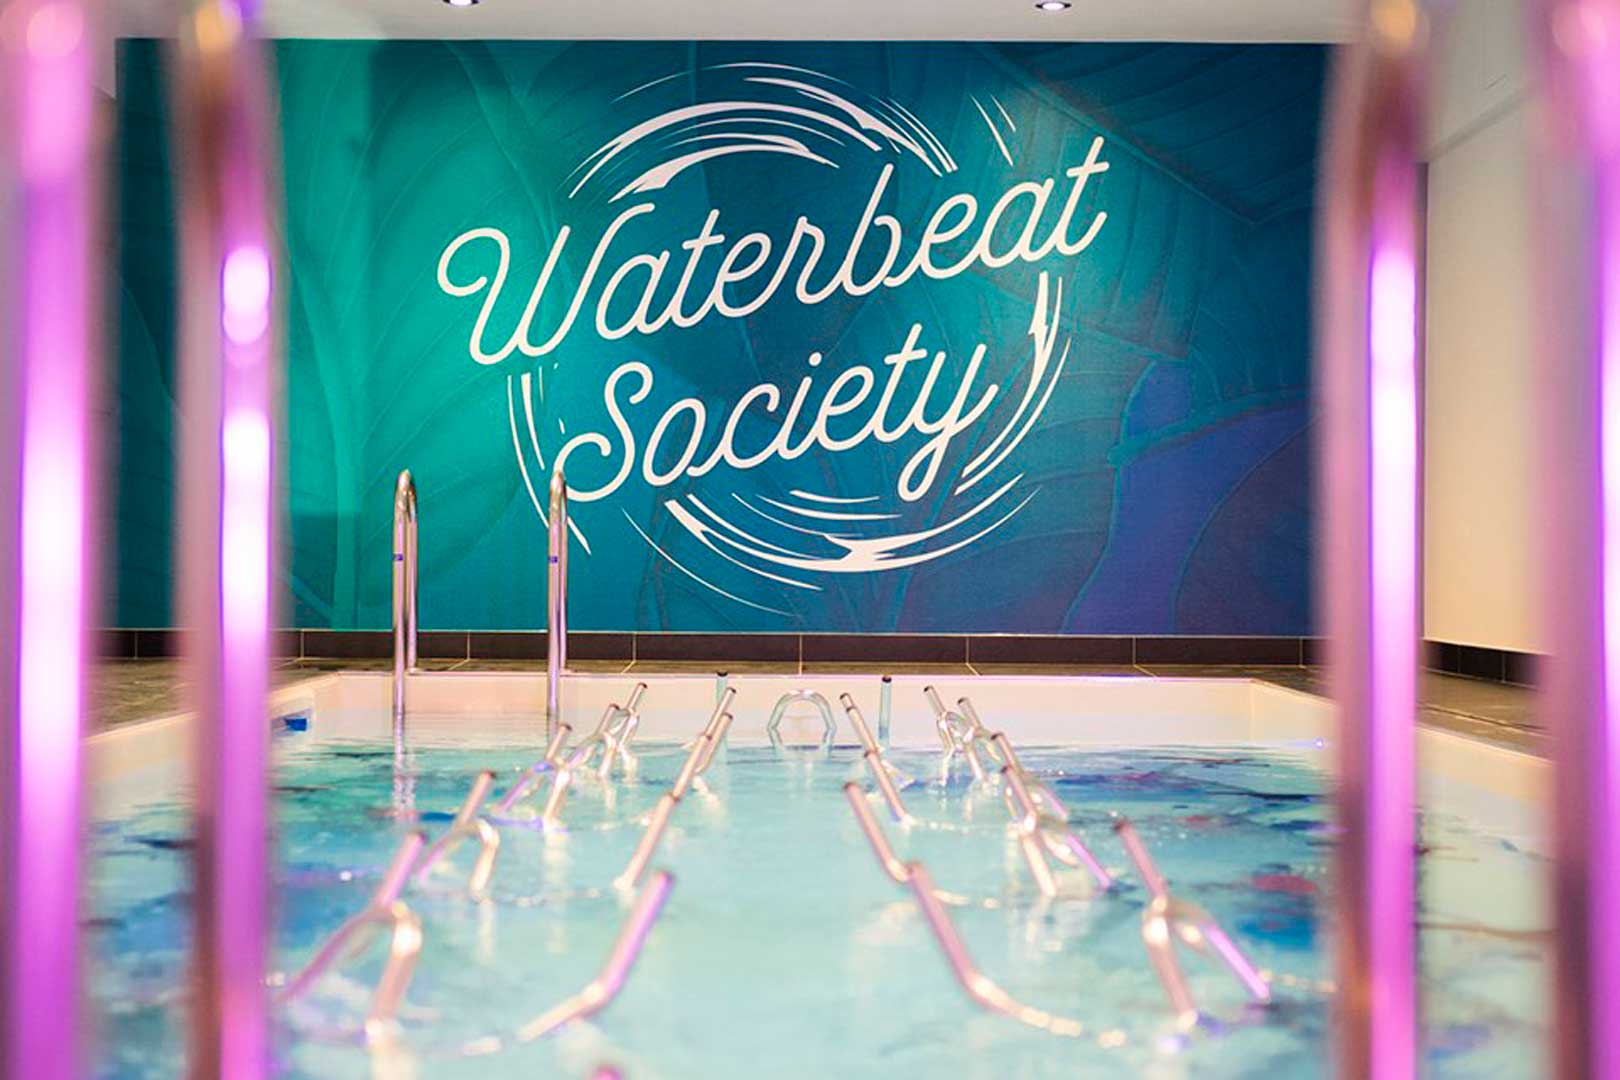 Waterbeat Society - Milano